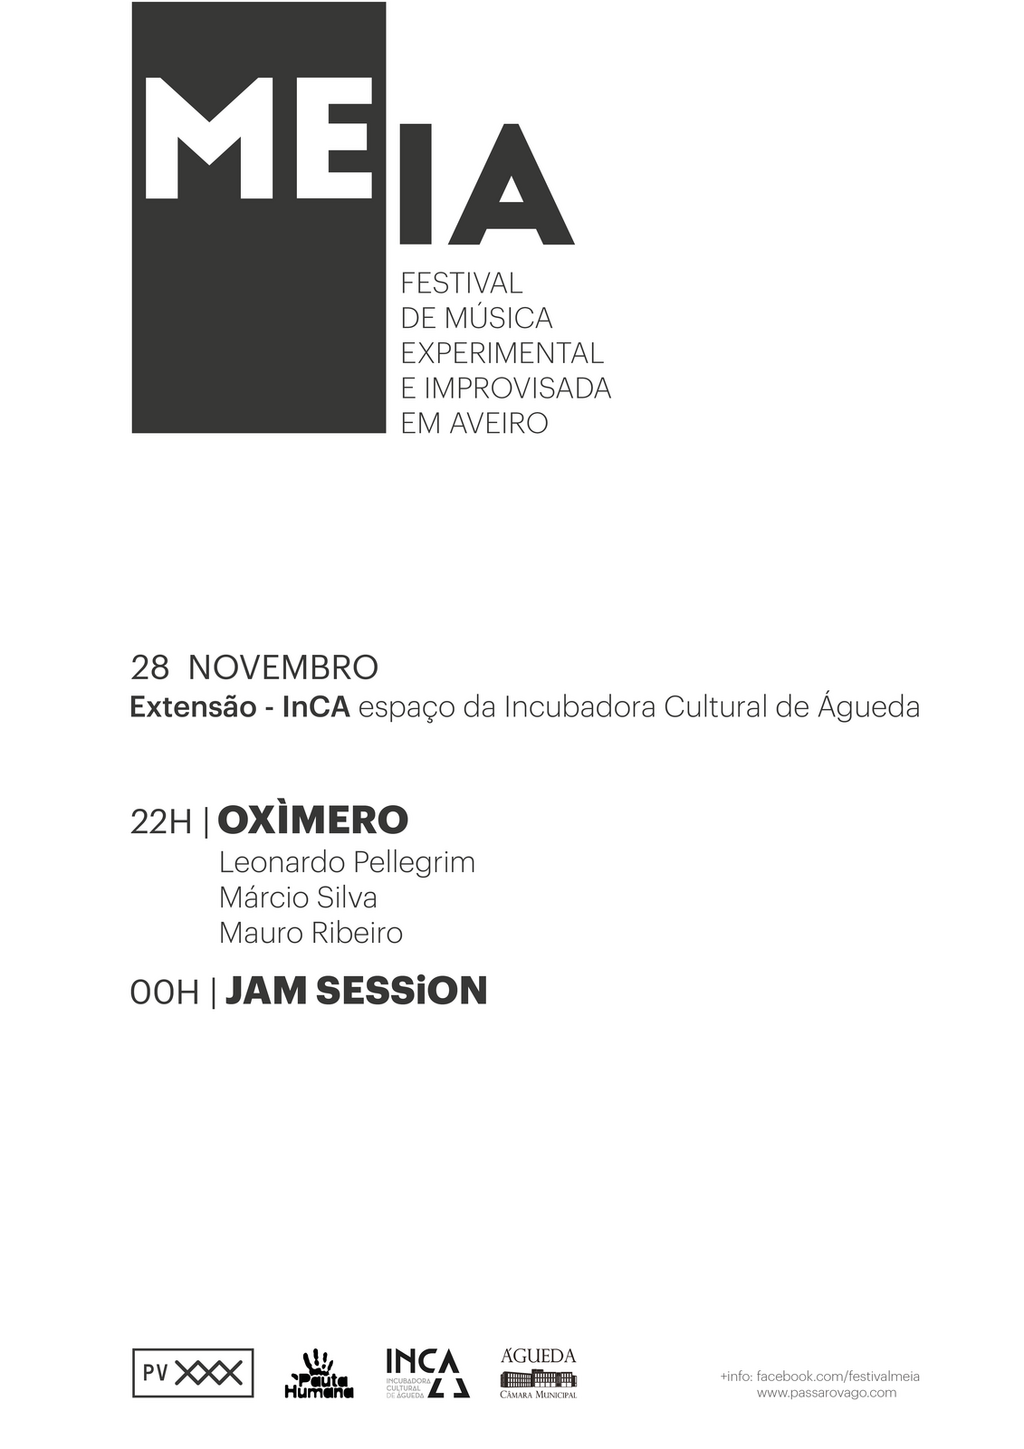 Extensão do festival MEIA no espaço da Incubadora Cultural de Águeda